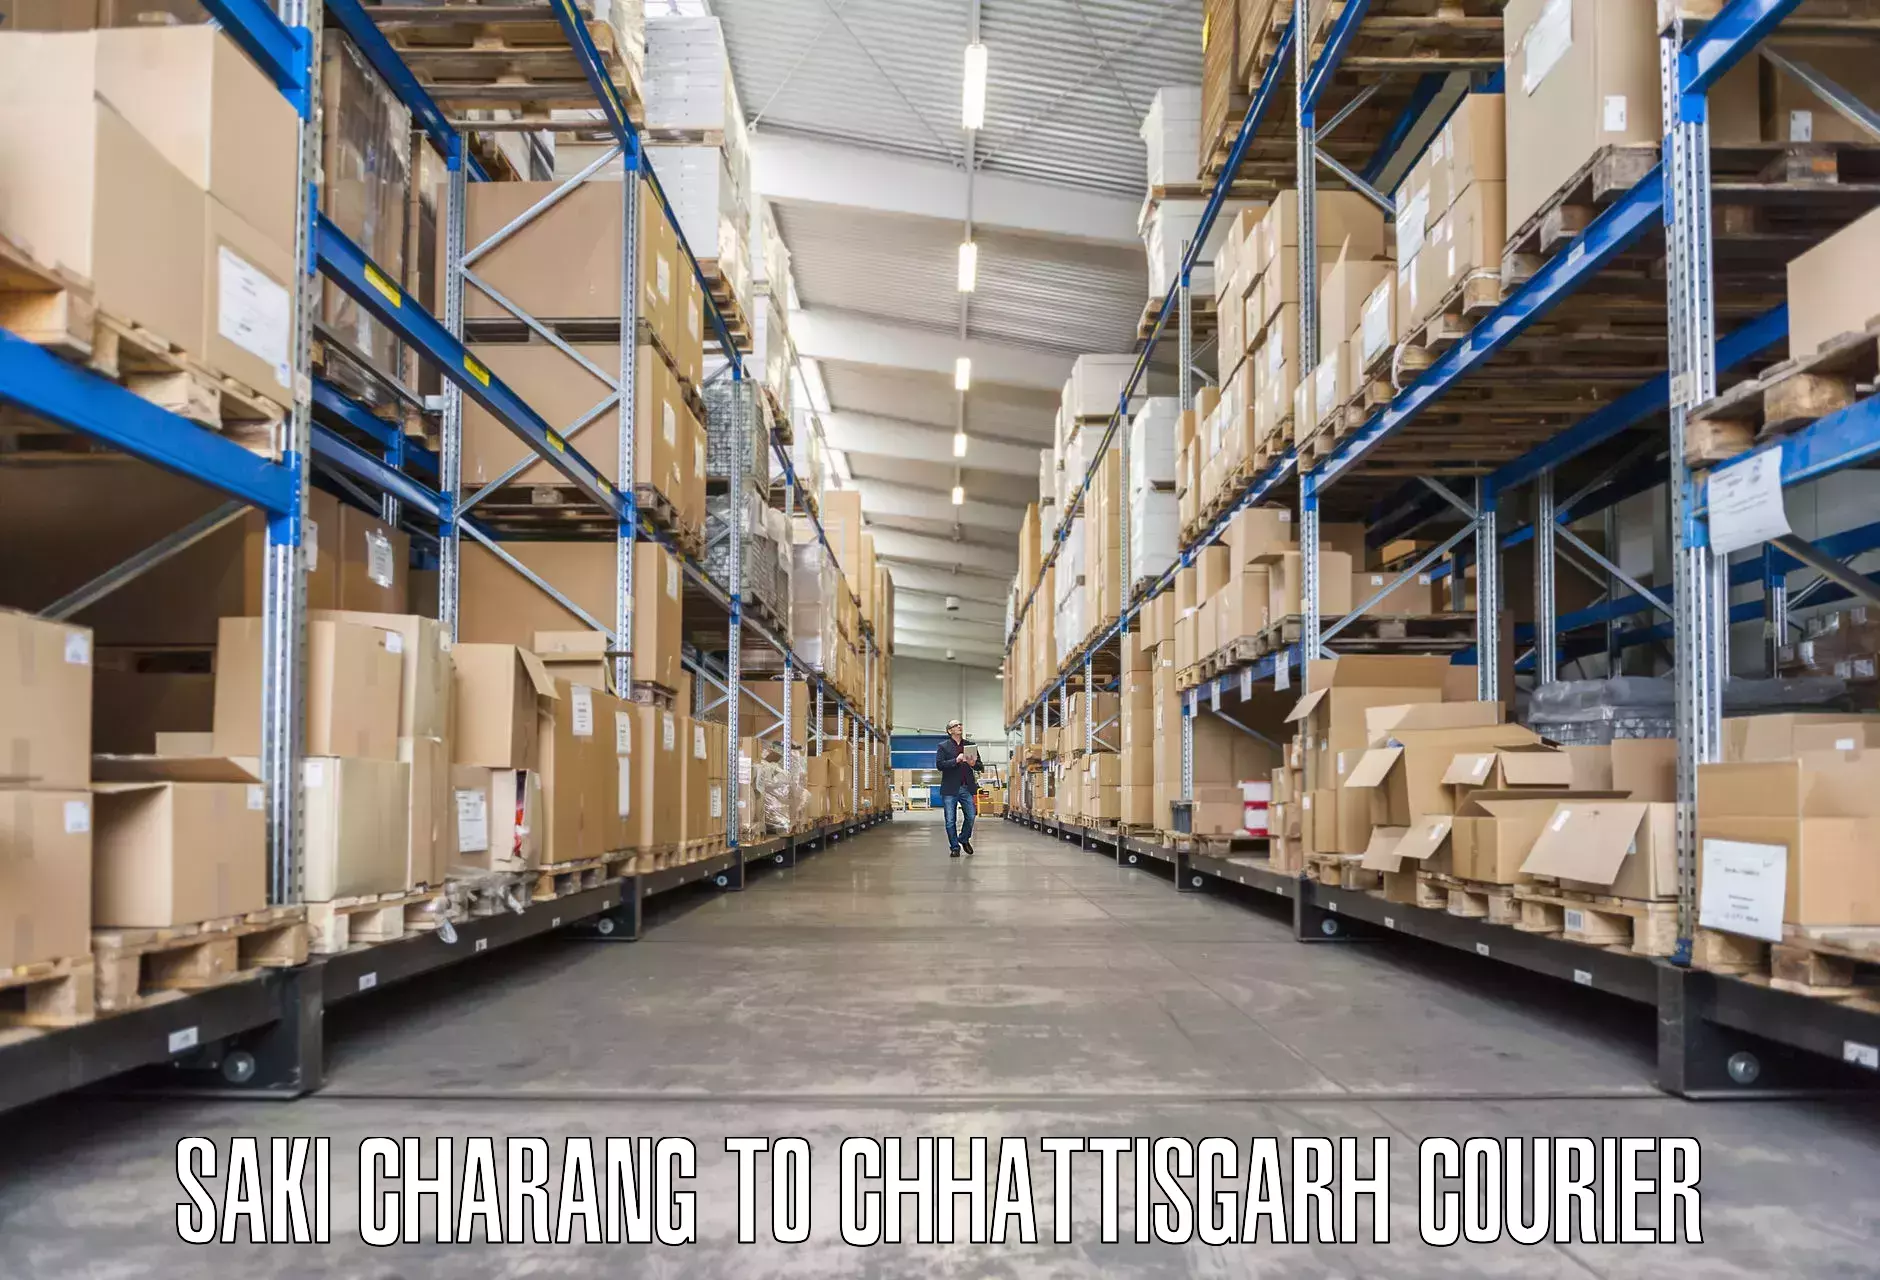 Residential furniture transport Saki Charang to Chhattisgarh